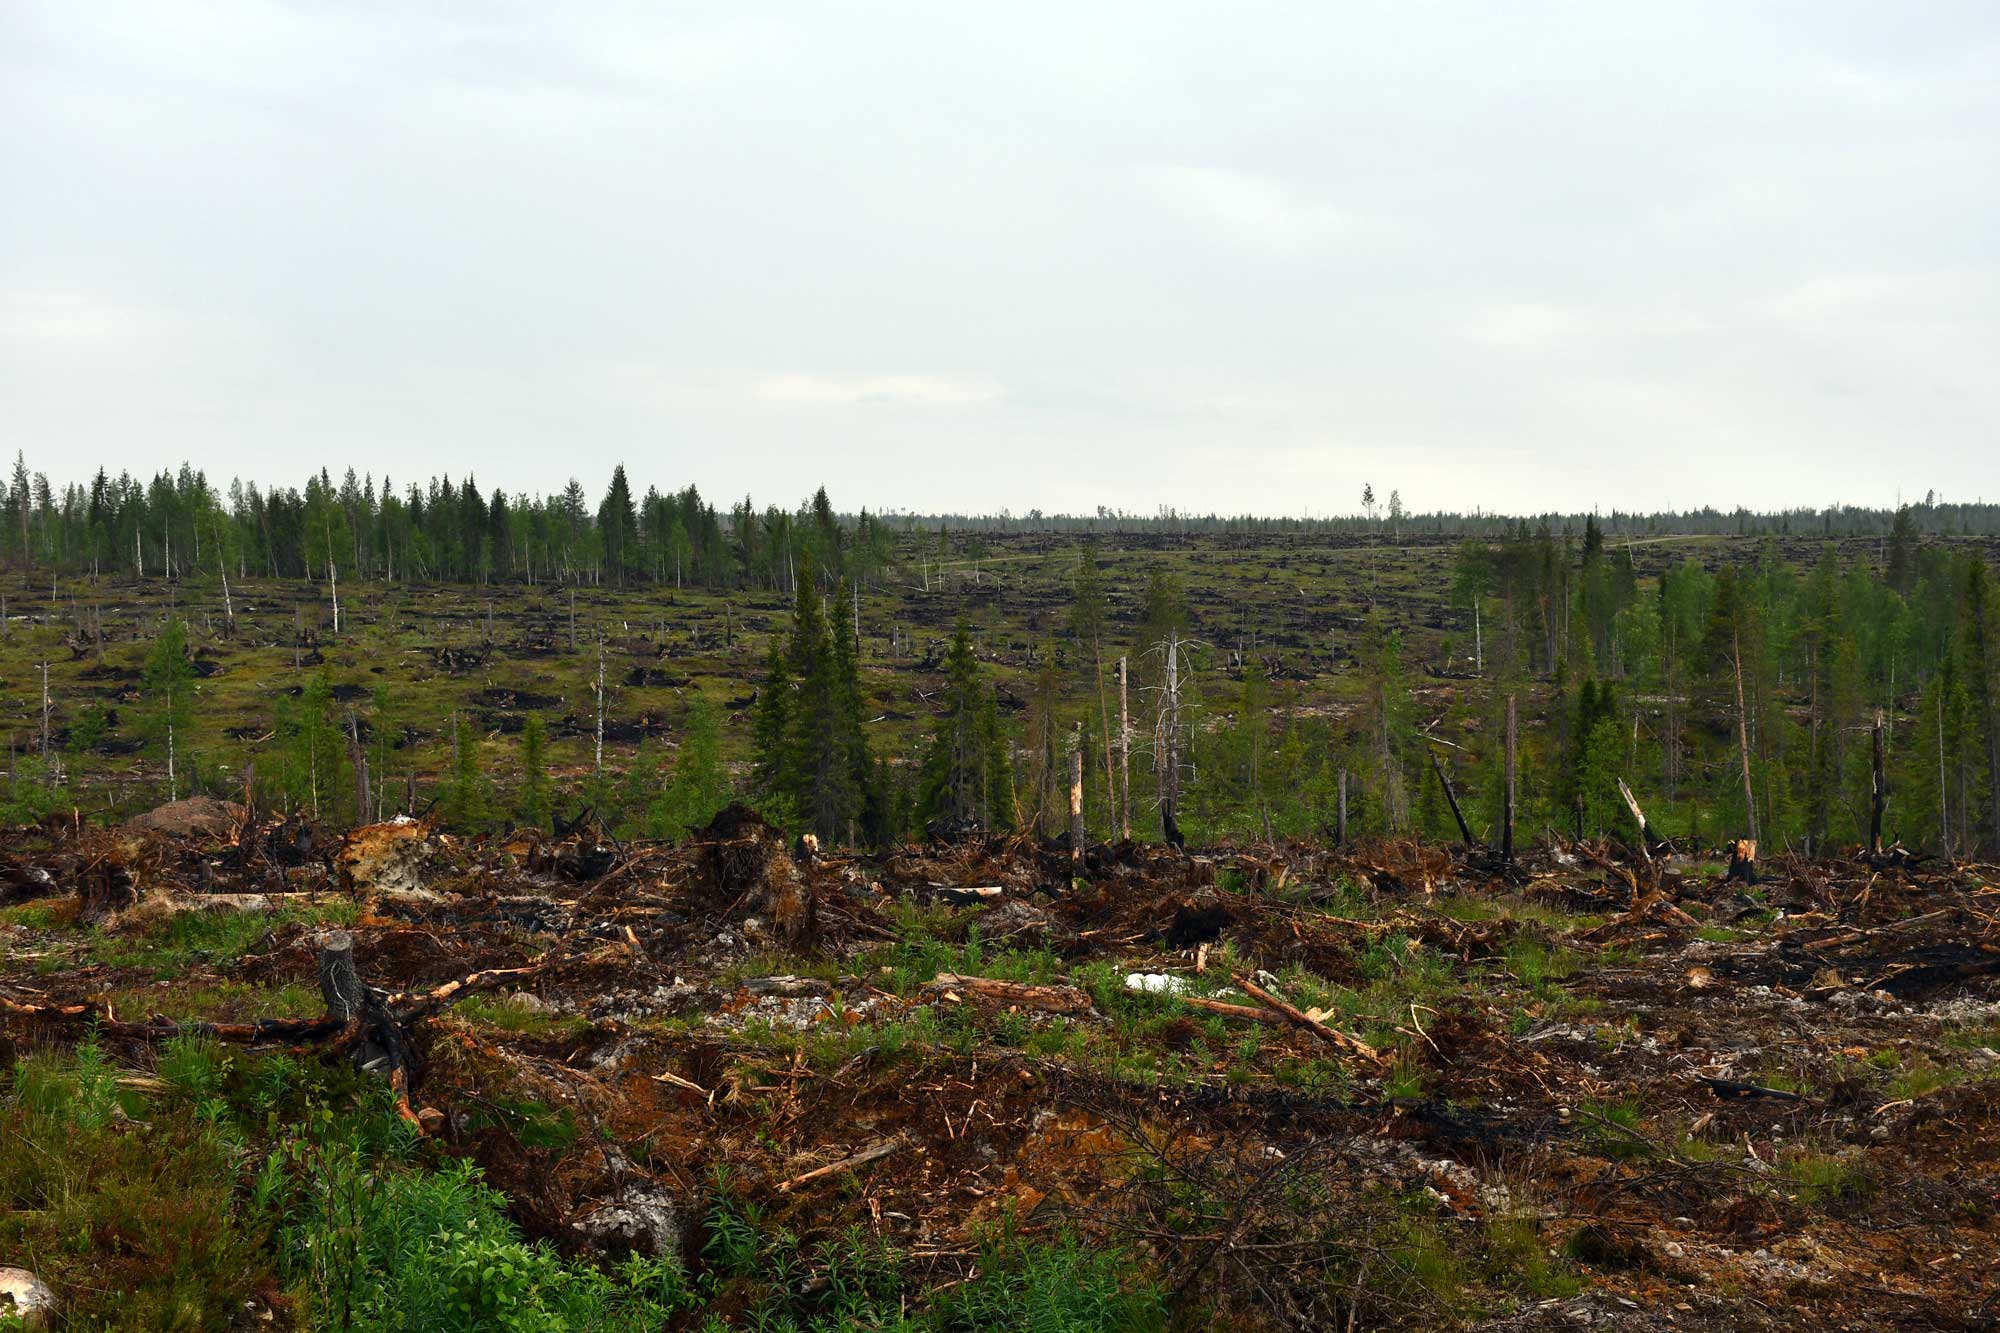 Paula-myrskyn tuhoalueita mäen päältä kesällä kuvattuna. Täysin puuttomaksi menneitä kymmenien hehtaarien alueita, joilta puut korjattu pois. Välissä pieniä pystyyn jääneitä puita.